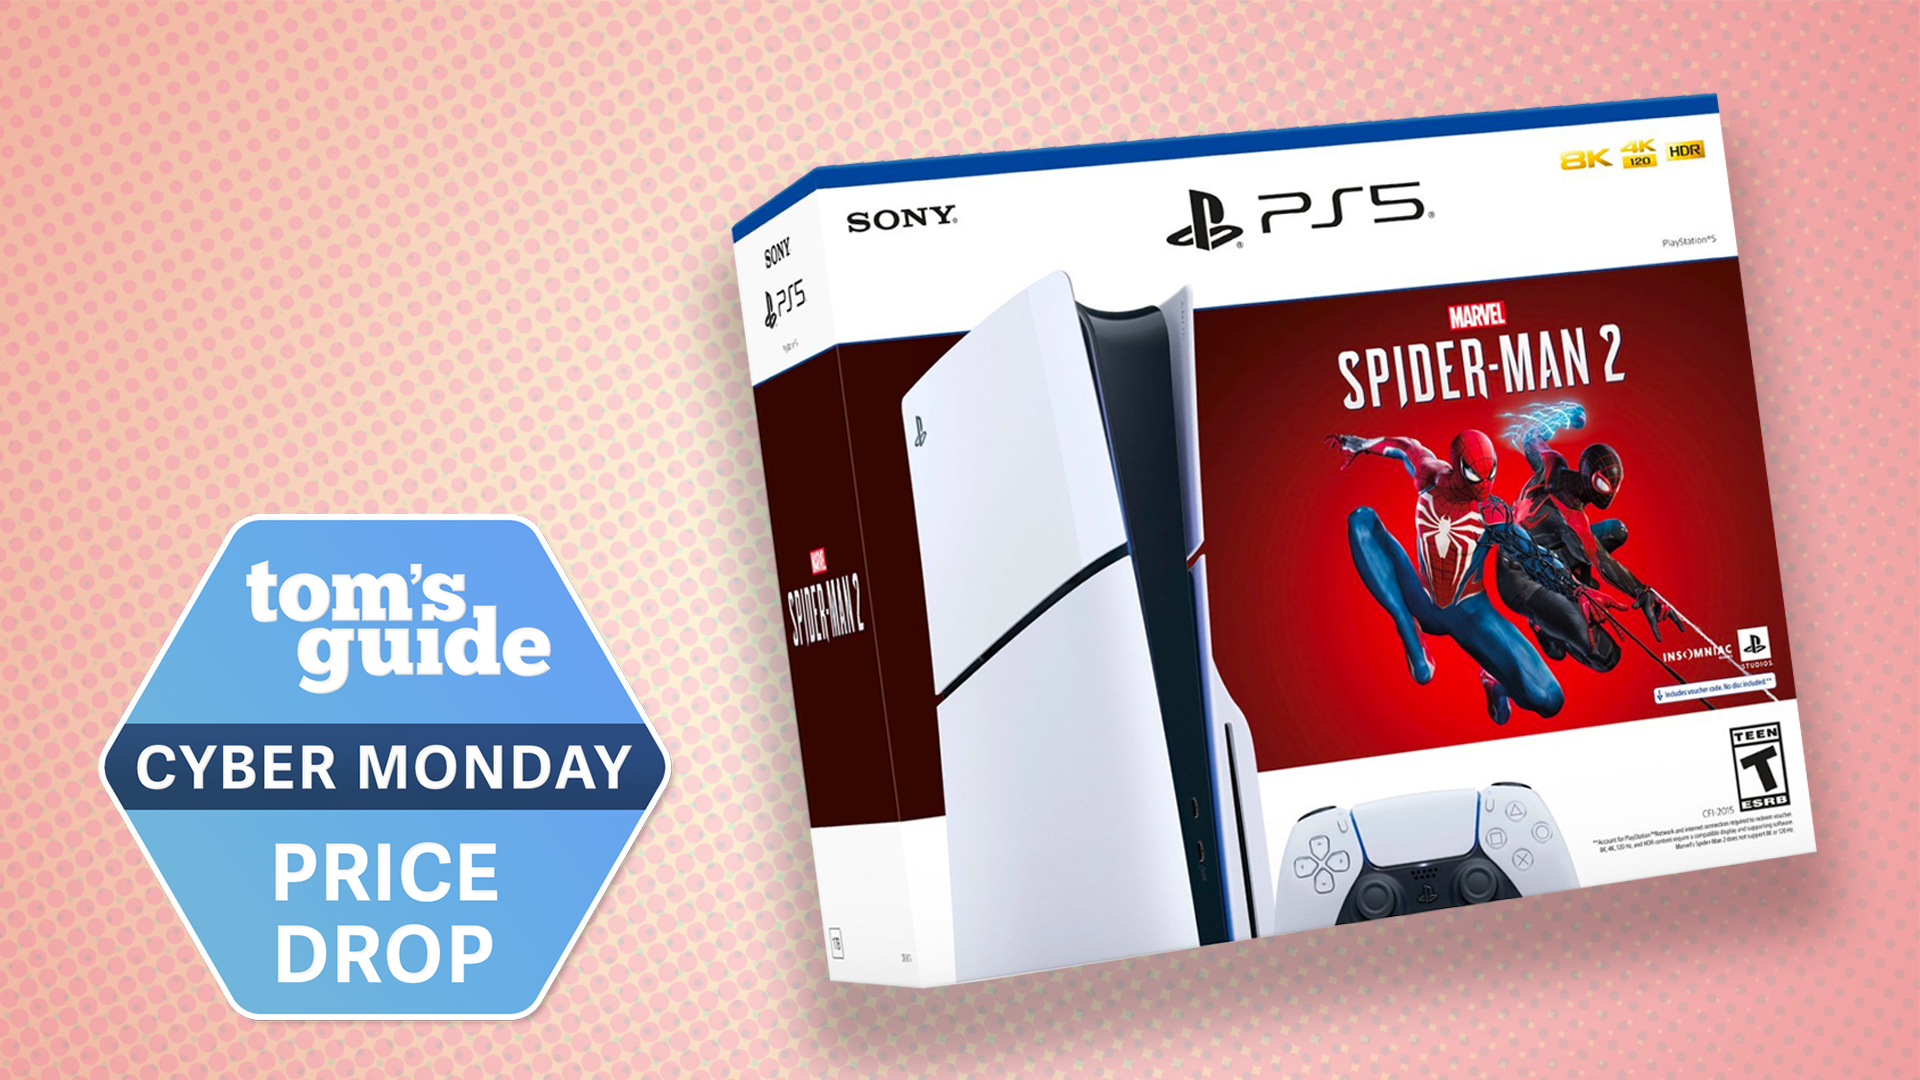 PS5 Slim Holiday Bundles For $499 - Get Spider-Man 2 Or Modern